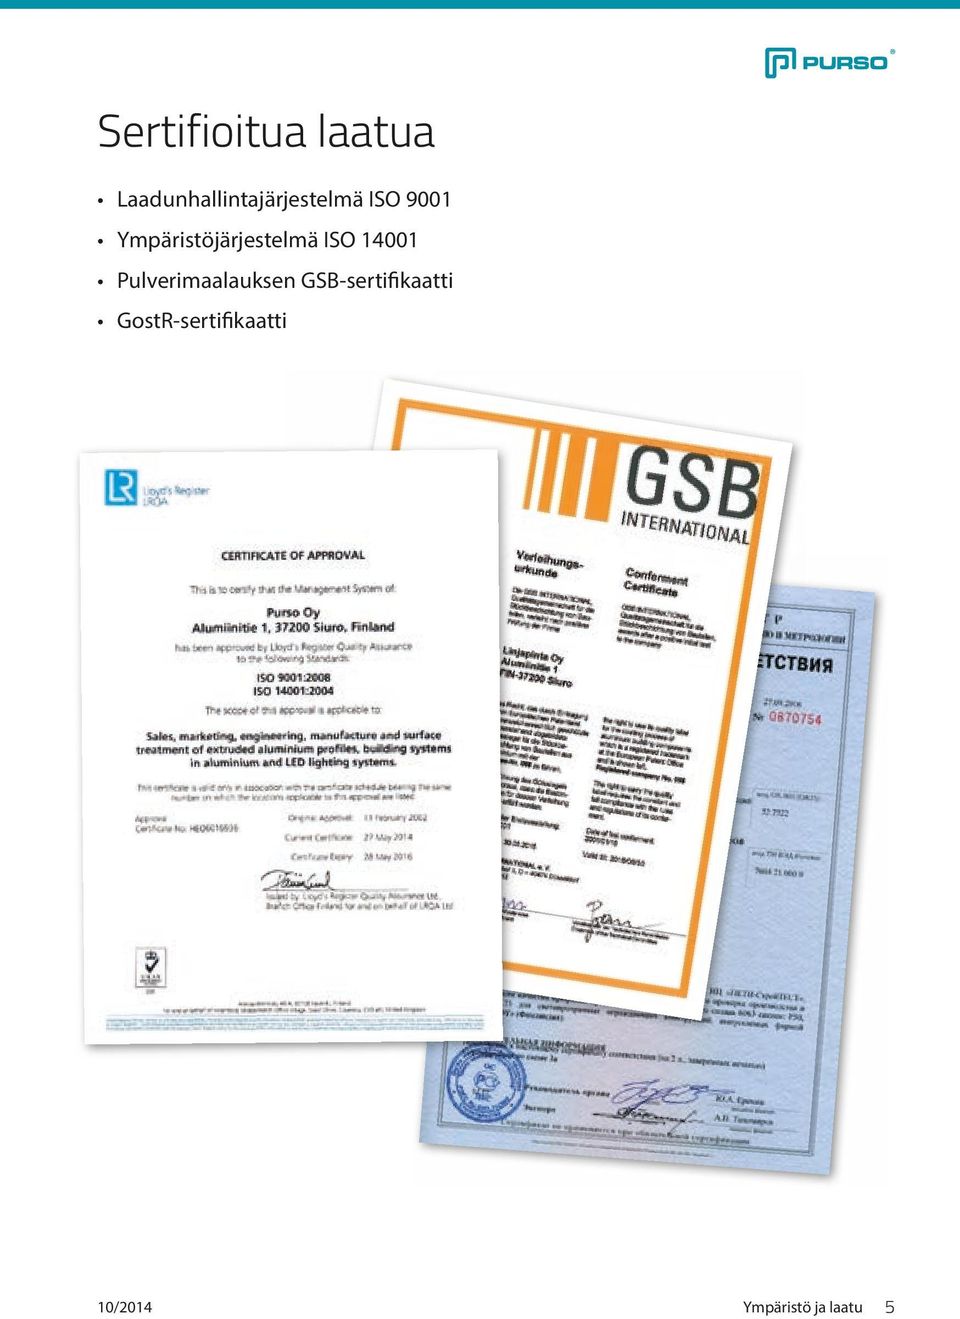 Ympäristöjärjestelmä ISO 14001